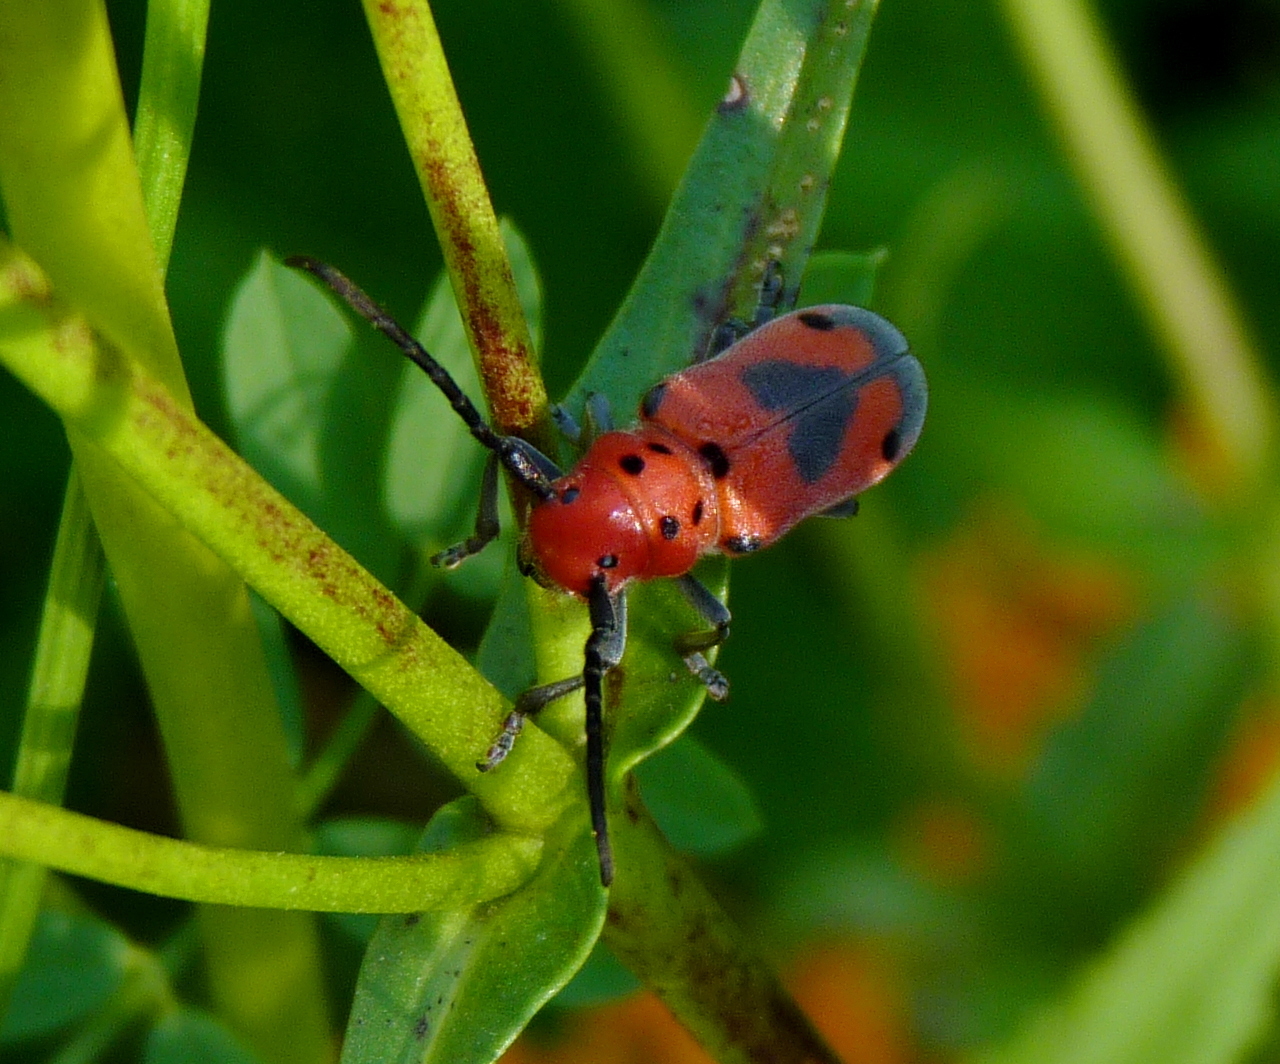 Image of Blackened Milkweed Beetle